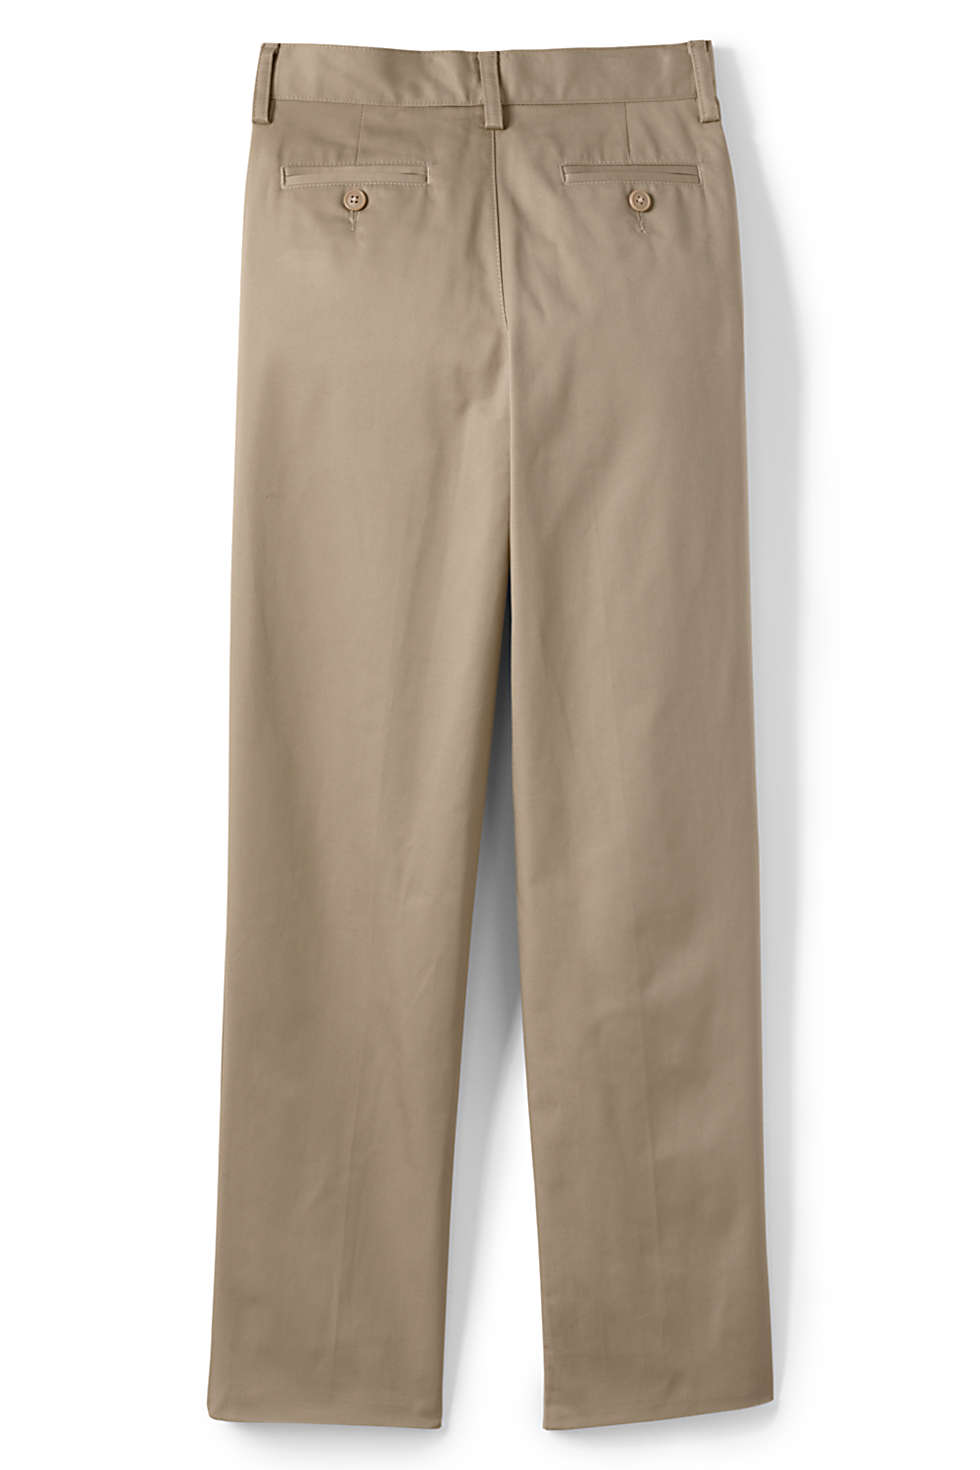 Lands' End Lands End Uniform Boys Size 20, 27" Inseam Cotton Plain Front Chino Pant, Khaki